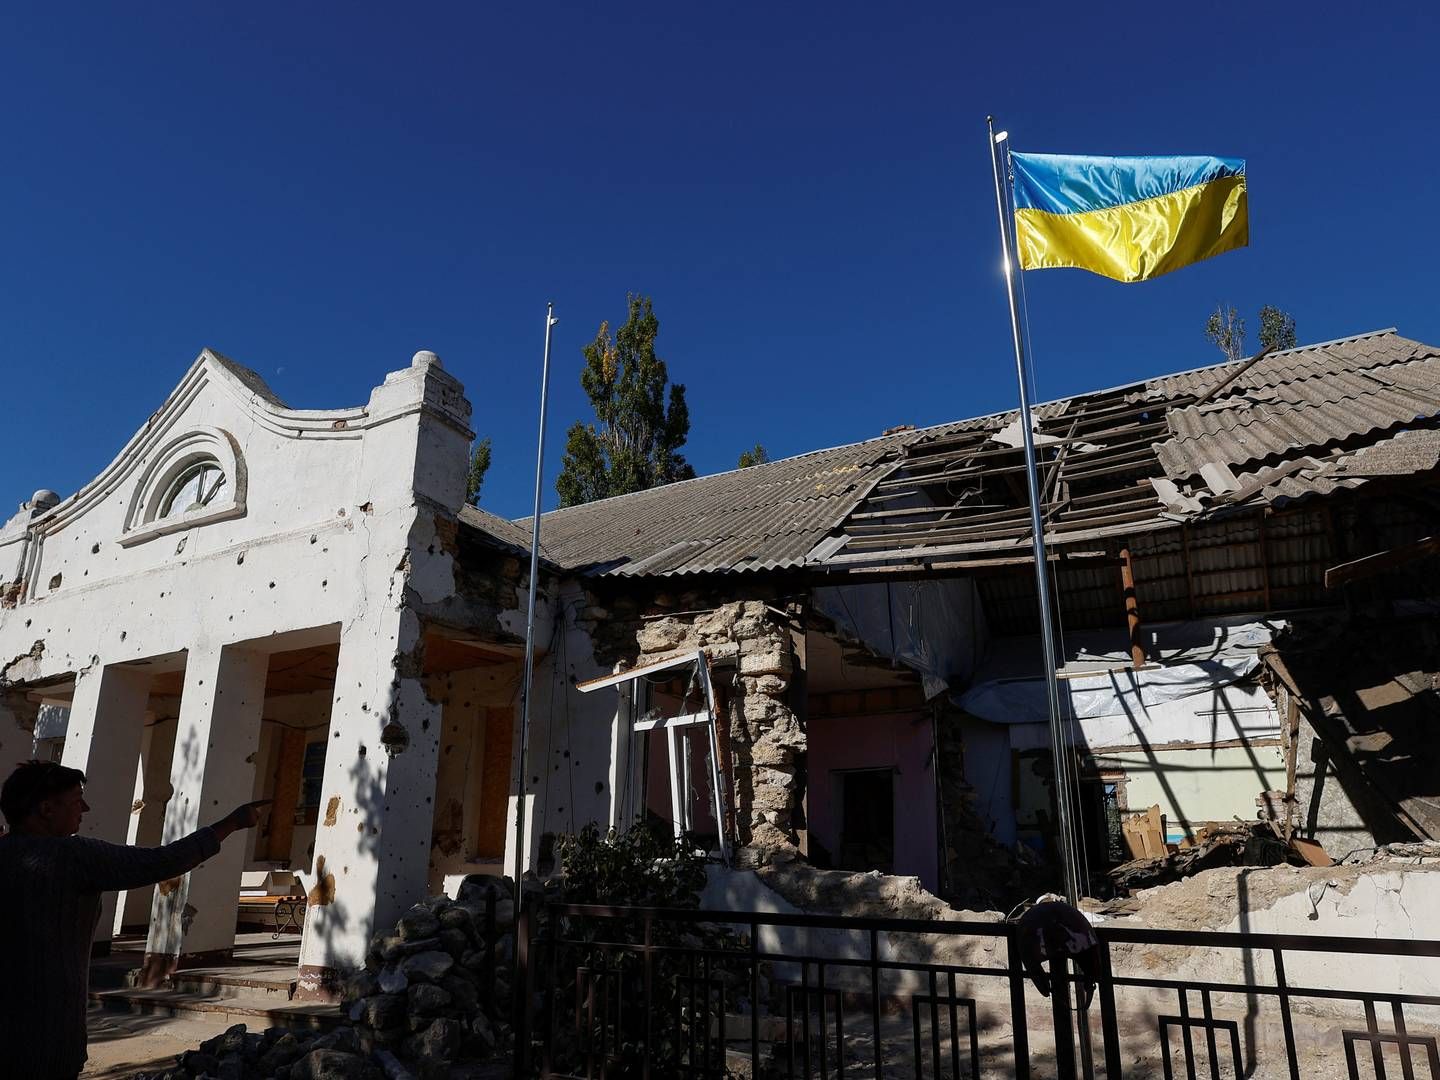 Den russiske invasion af Ukraine begyndte i februar. Her et ukrainsk flag over en ødelagt bygning i landsbyen Lymany i Mykolaiv-regionen. | Foto: VALENTYN OGIRENKO/REUTERS / X03345